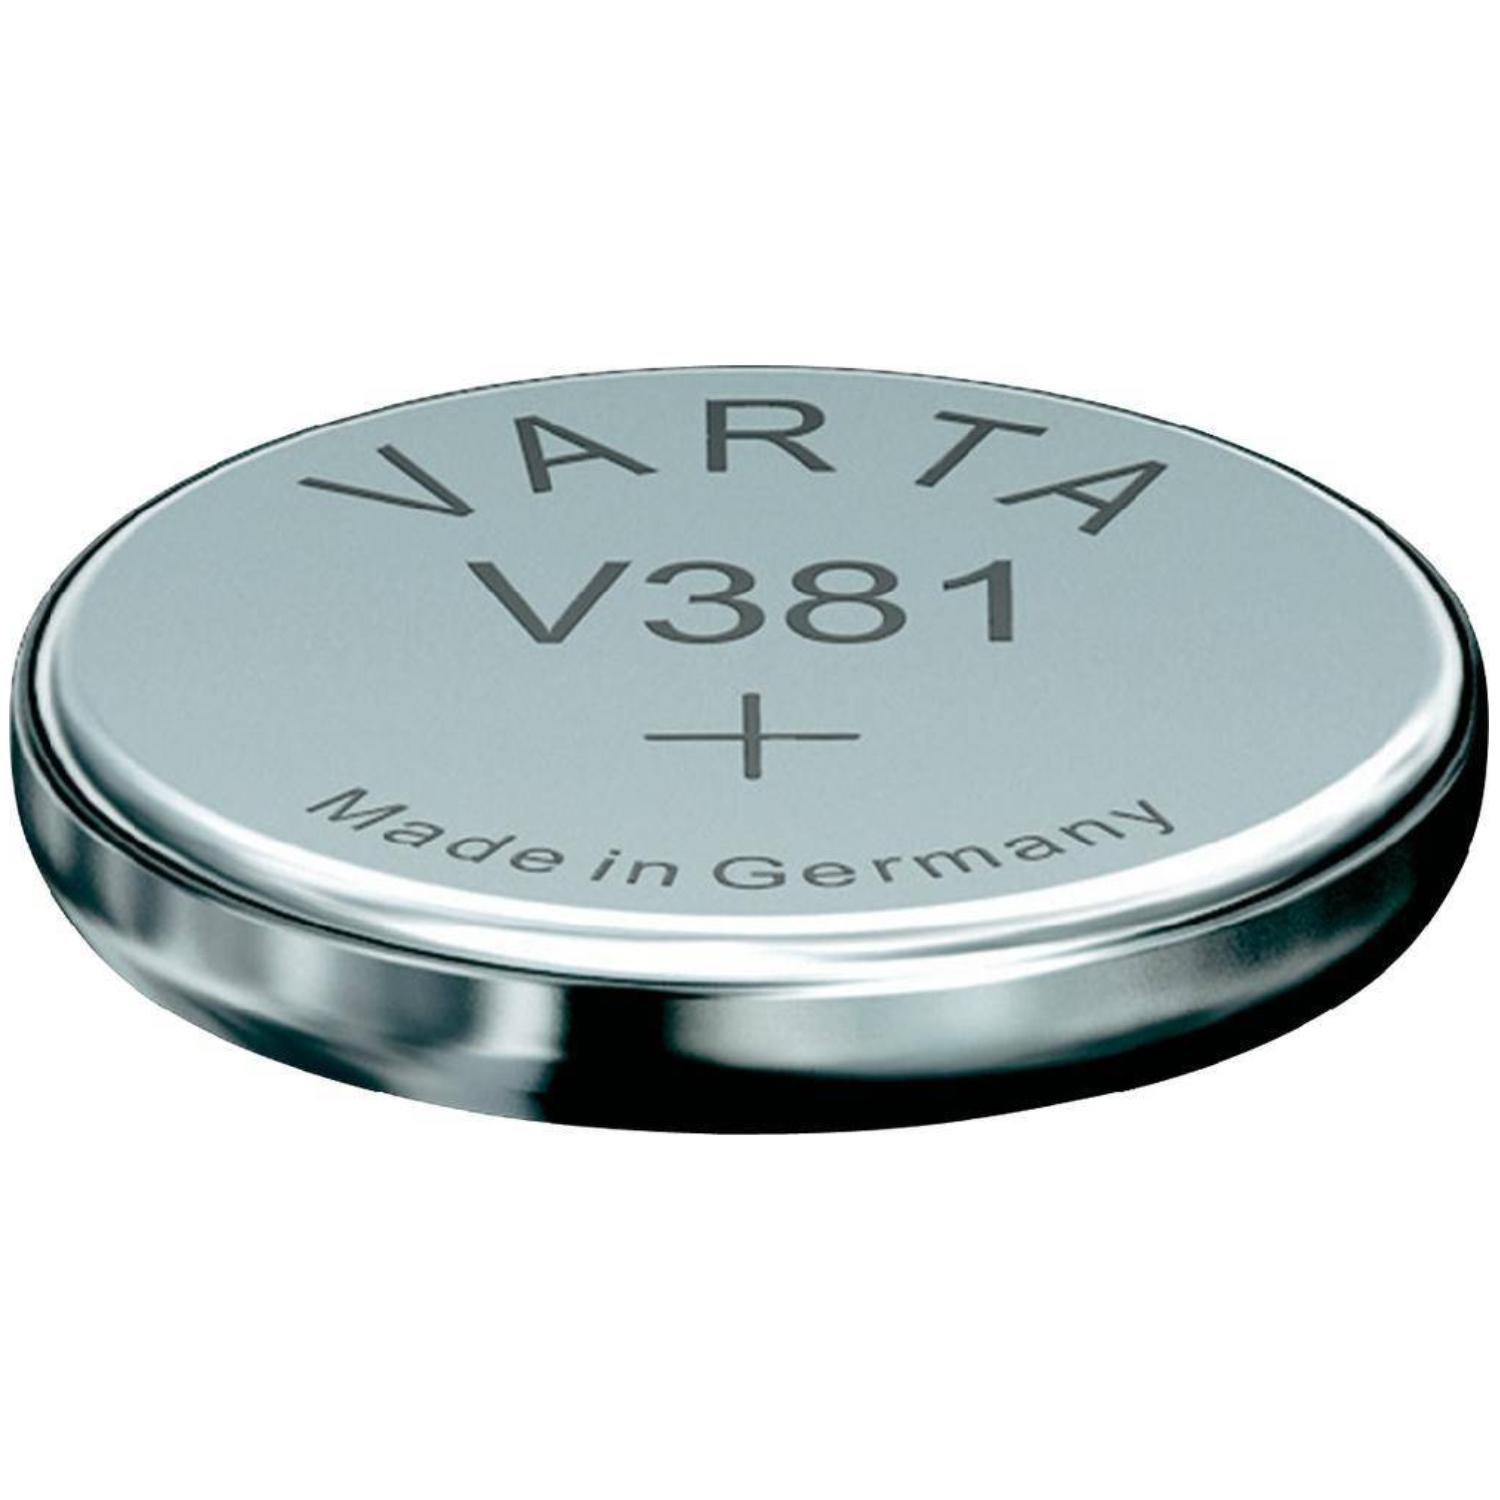 Pile bouton Varta modèle SR920SW référence V371 (1,55 V), Piles bouton